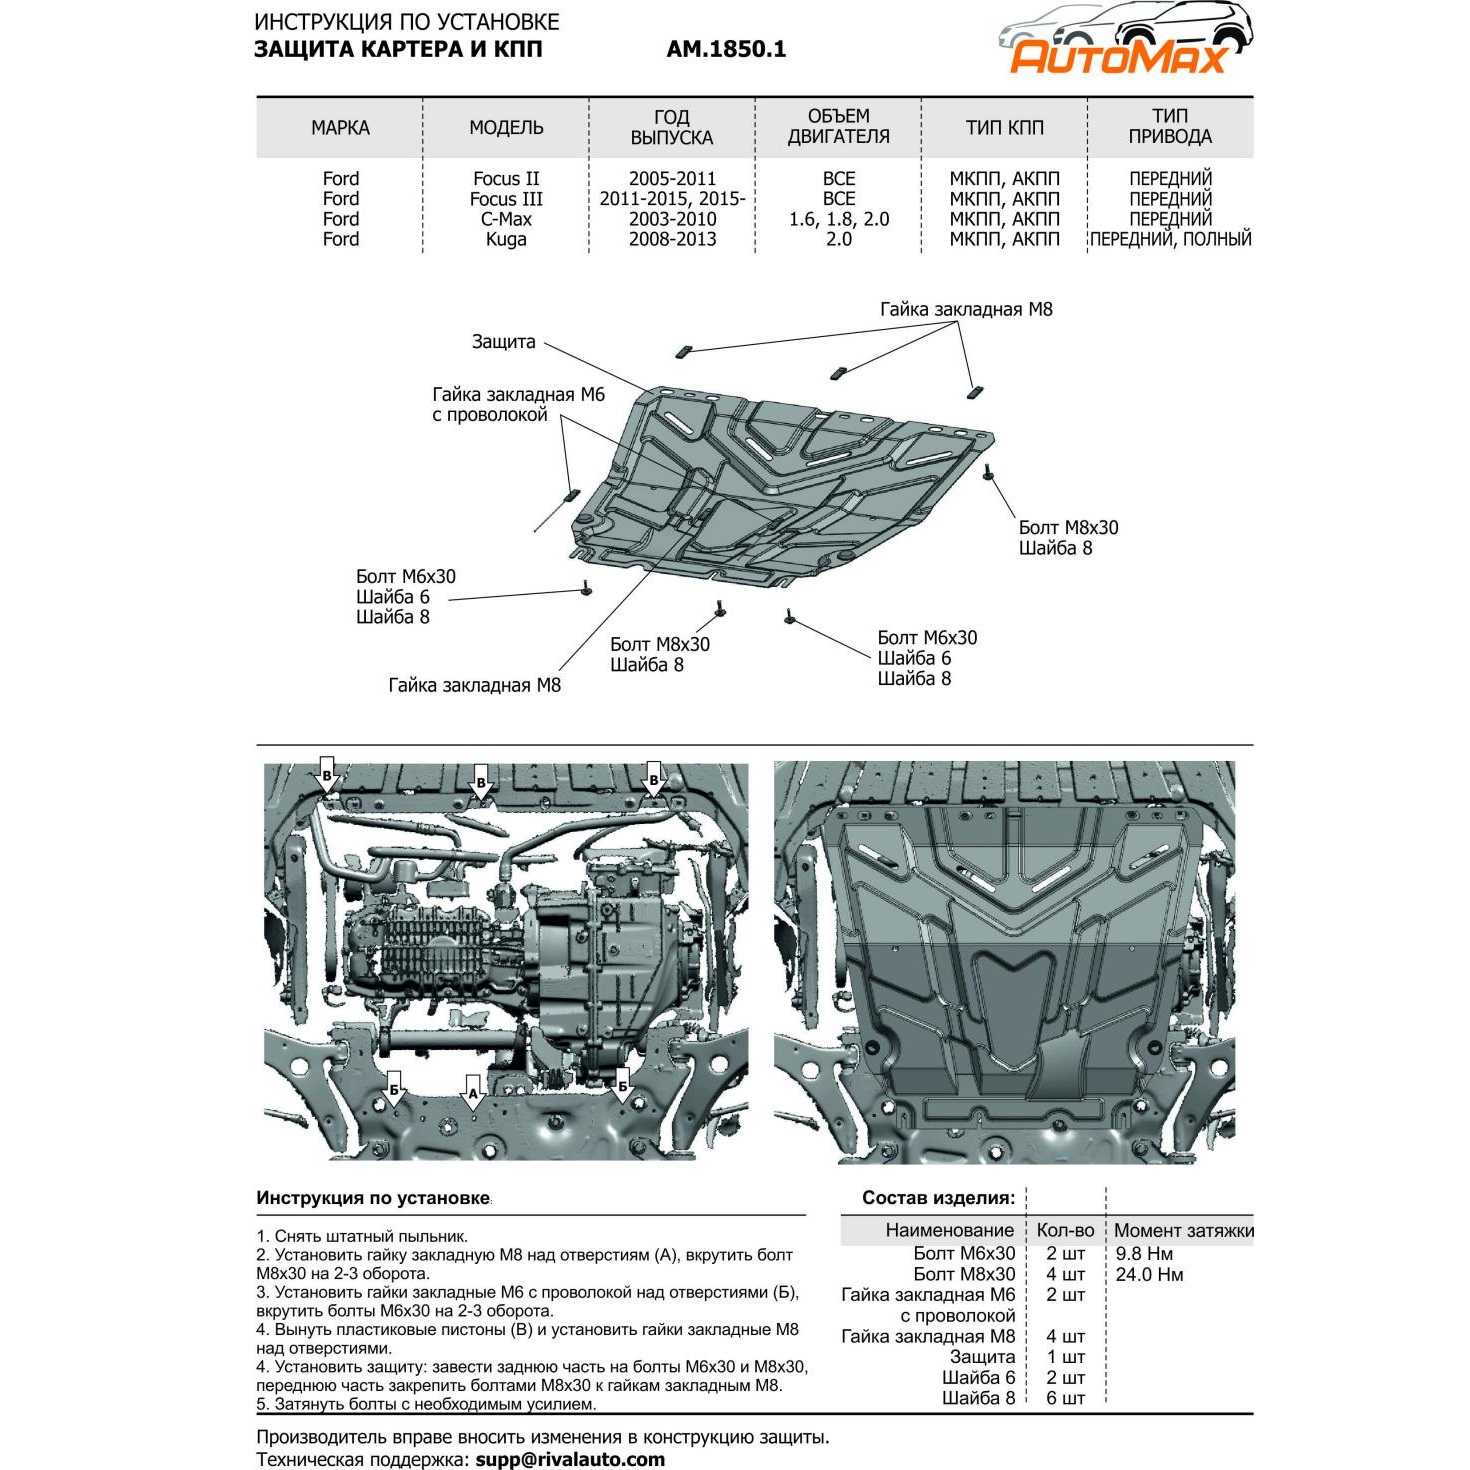 Защита картера двигателя и КПП Ford Focus II 2008-2010 рестайлинг Седан V - все Арт. AM.1850.1